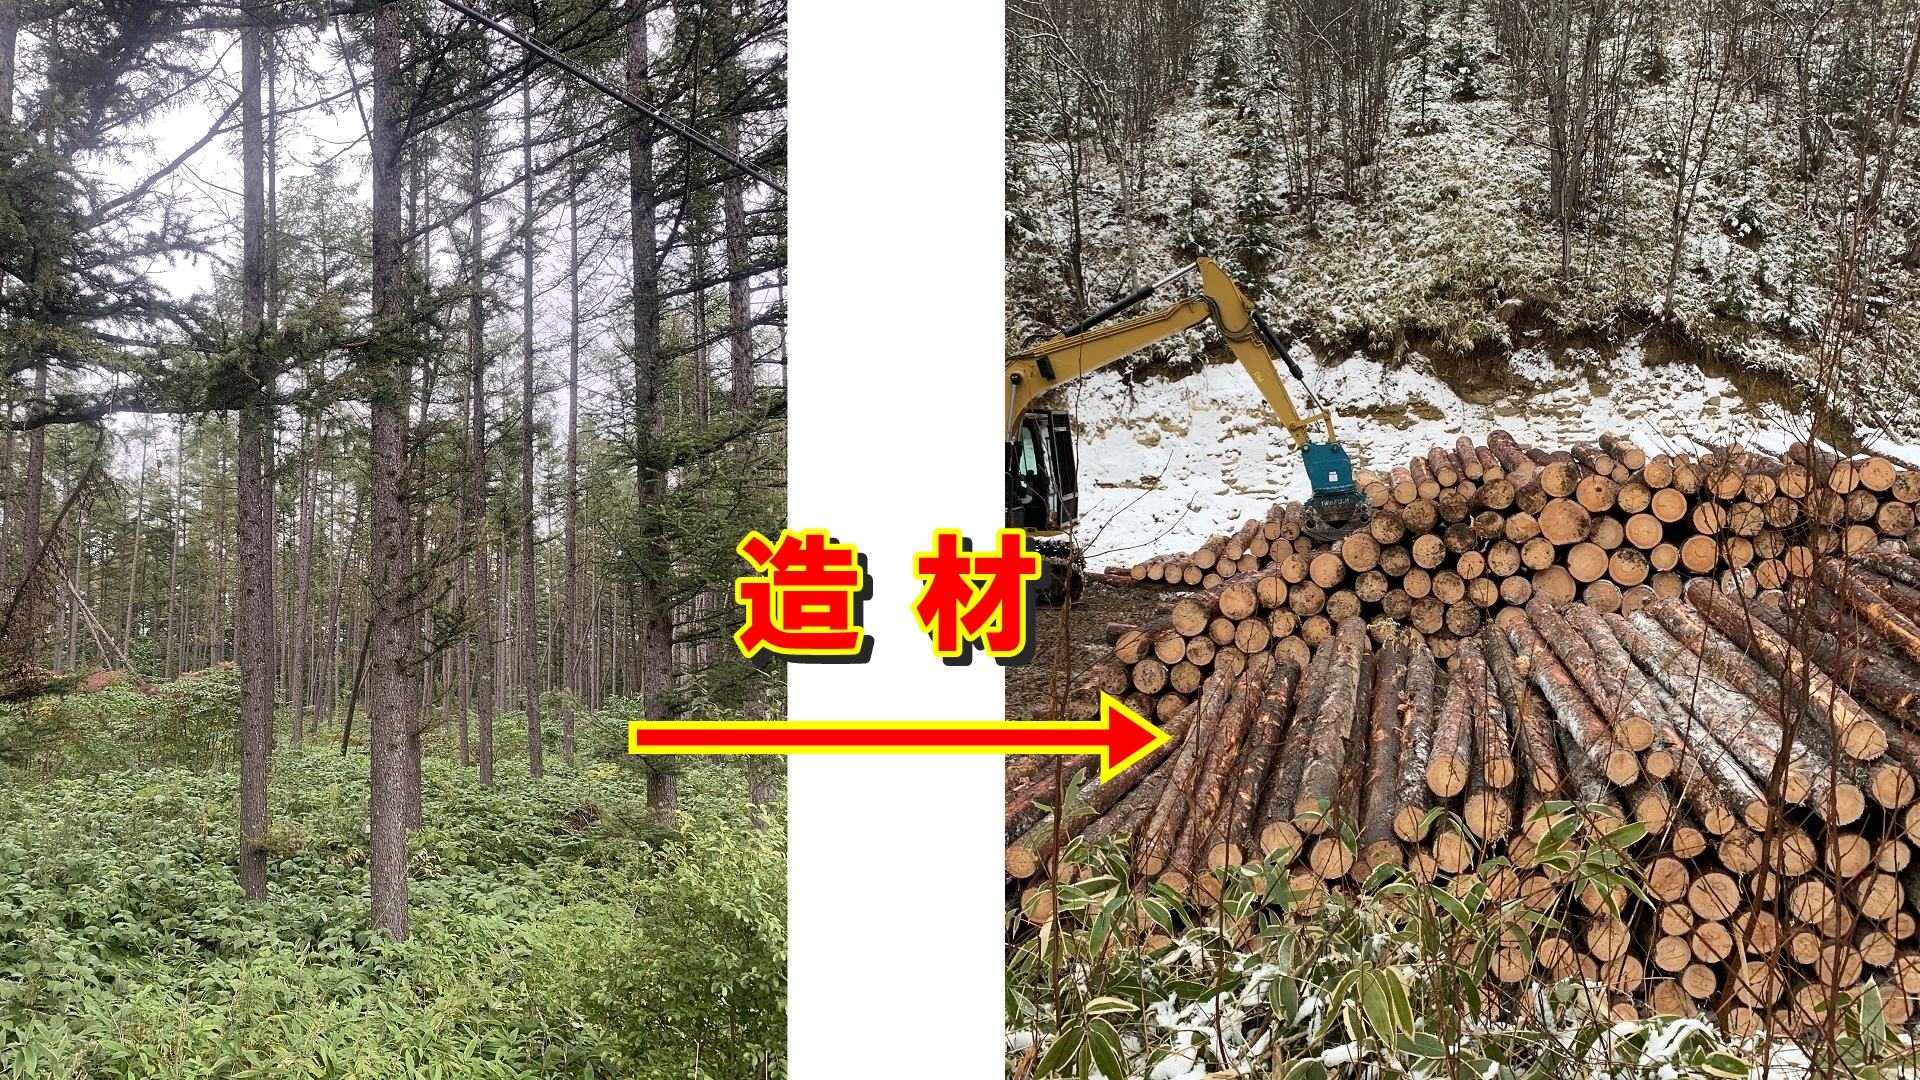 造材とは立木の状態から運搬しやすくするために丸太に加工する作業